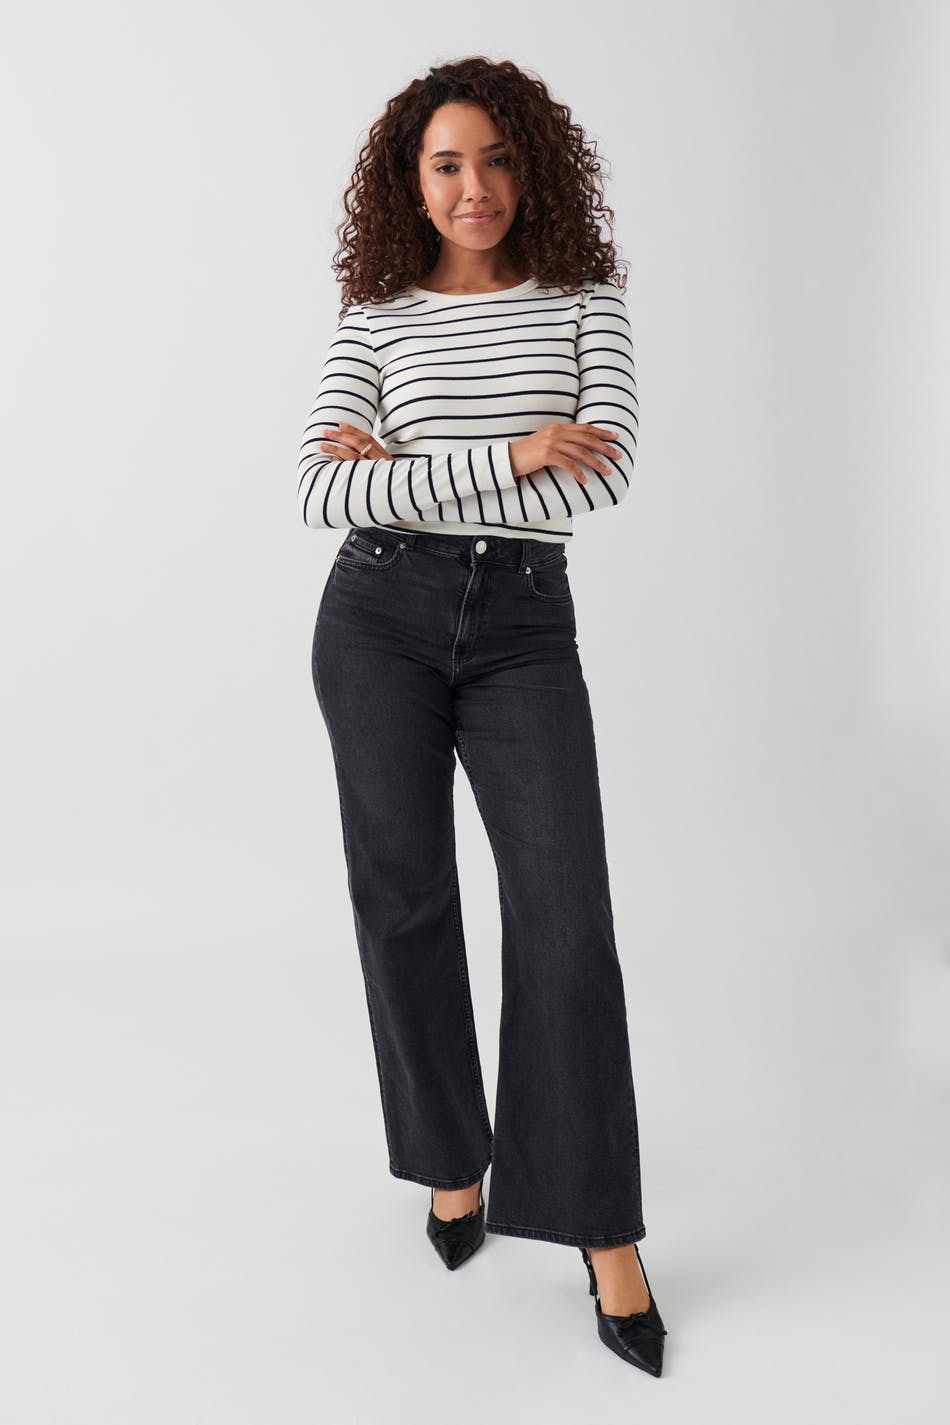 Damen J Brand Jeans Größe 36 fair online bestellen – Second Life Fashion